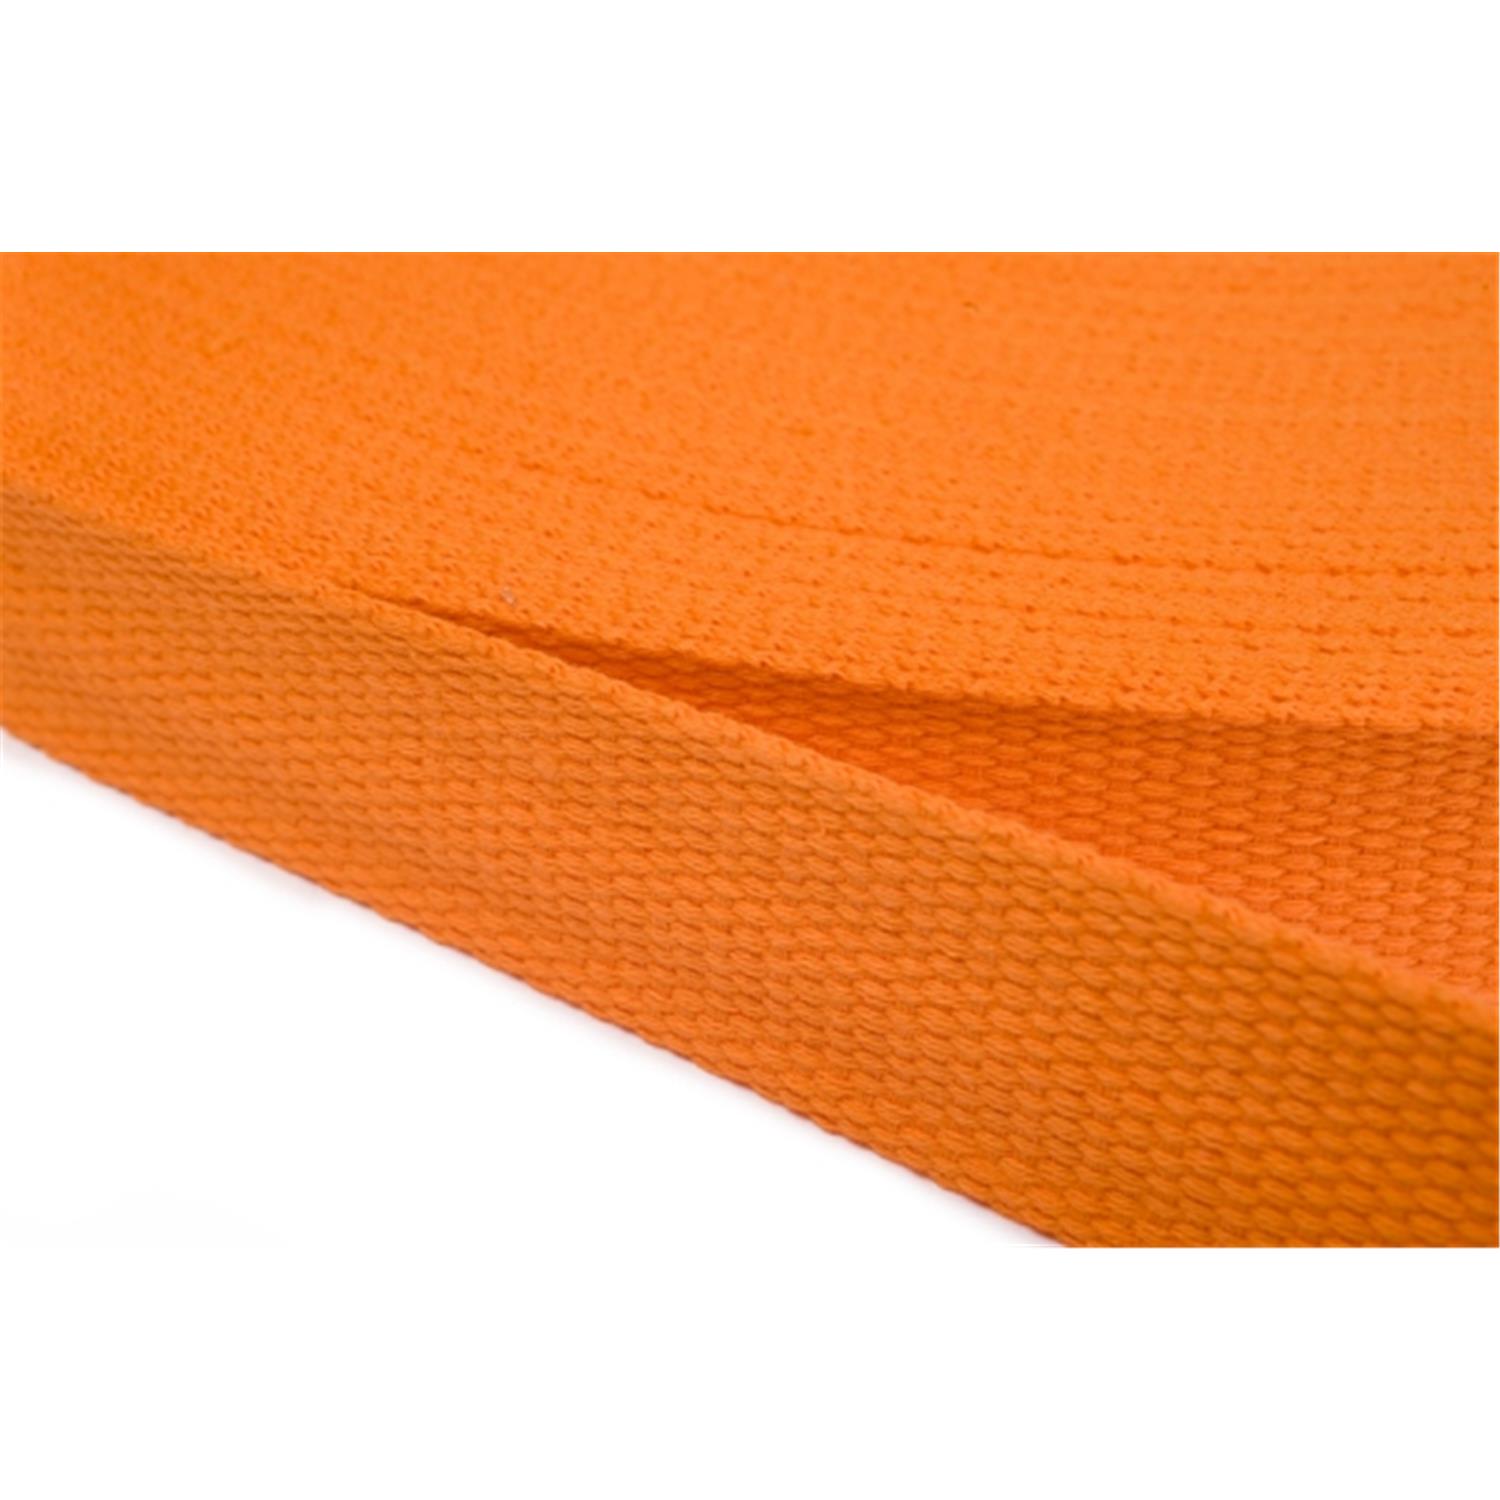 Gurtband aus Baumwolle 20mm in 20 Farben 06 - orange 12 Meter